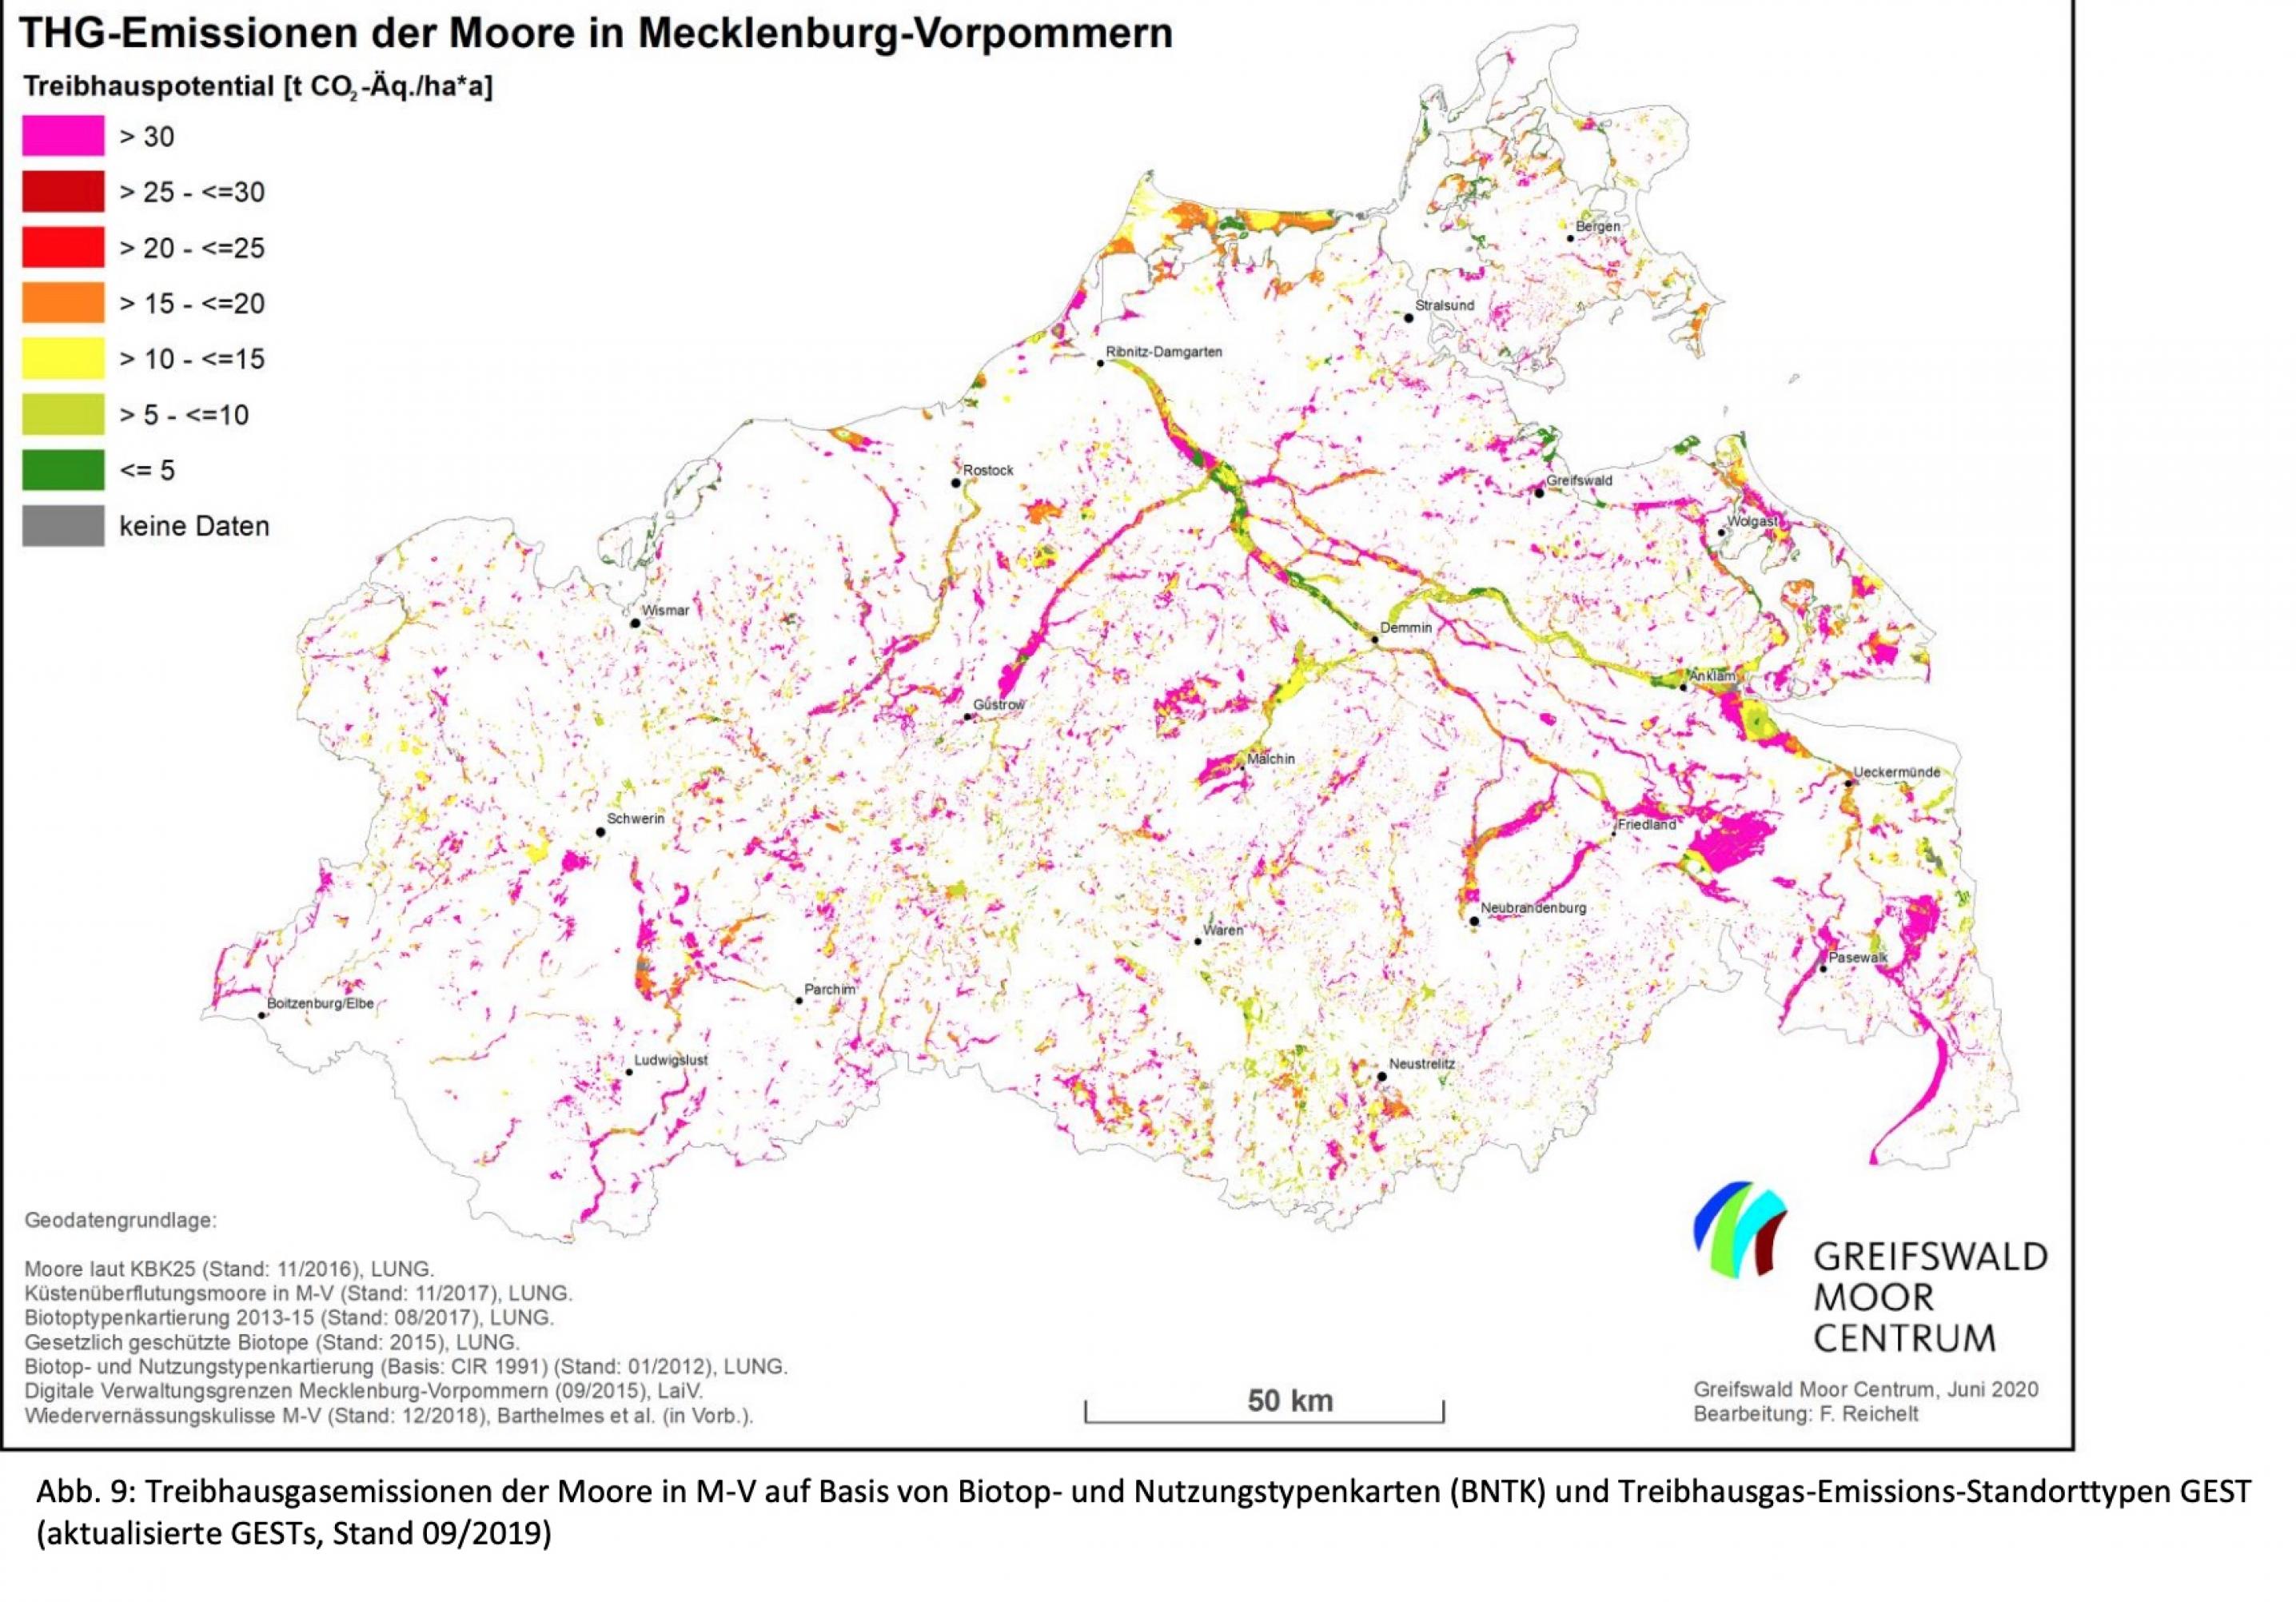 Auf der Karte sind die Moore Mecklenburg-Vorpommerns verzeichnet; verschiedene Farben markieren, wie viel Treibhausgase sie ausstoßen. Die häufigste Farbe, Magenta, steht für Emissionen über 30 Tonnen pro Hektar und Jahr